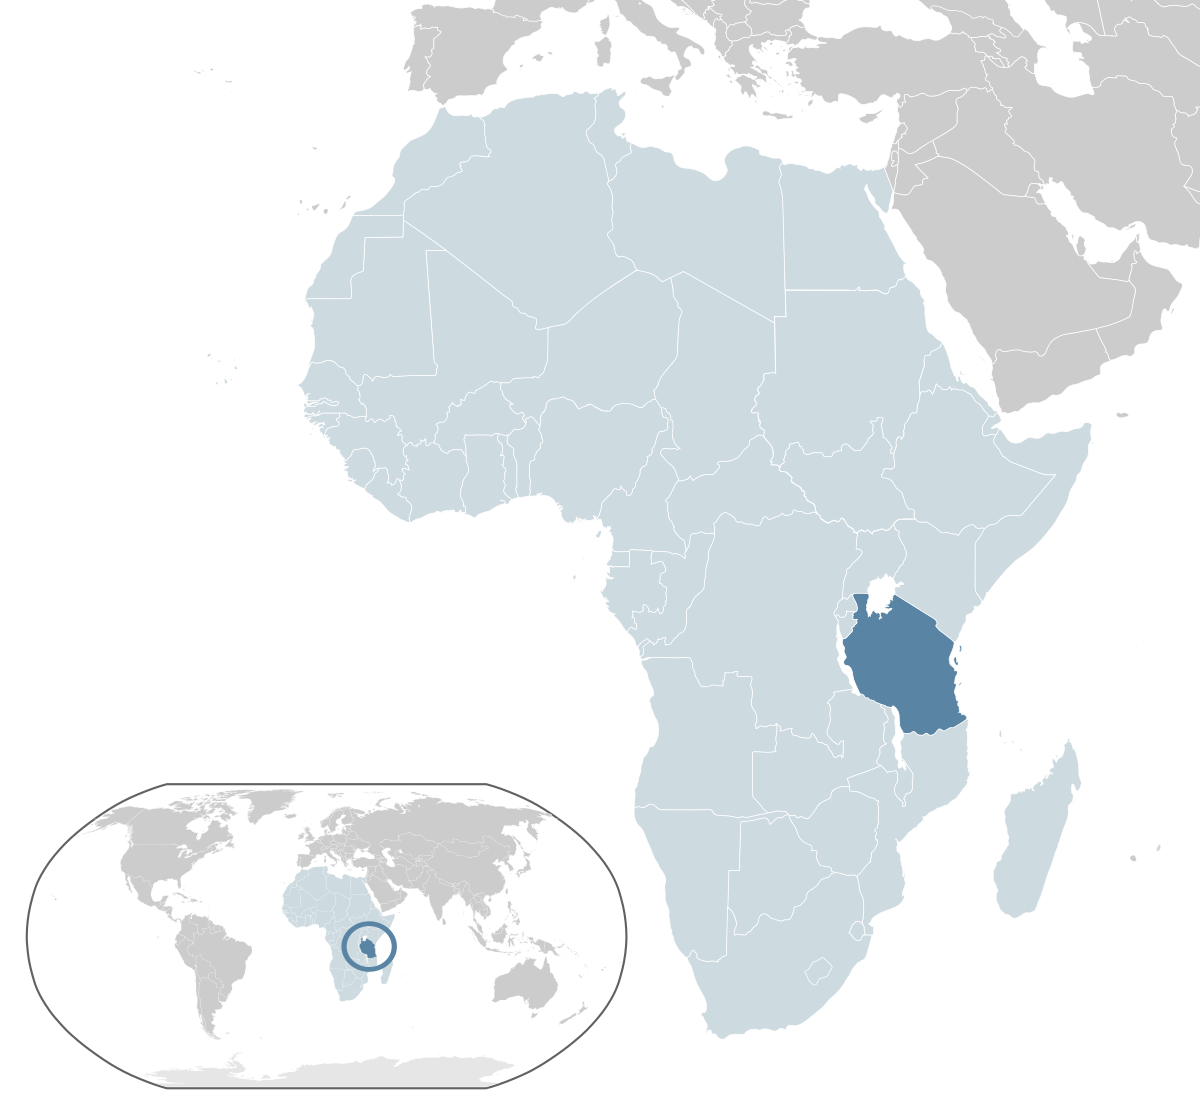 LGBT rights in Tanzania